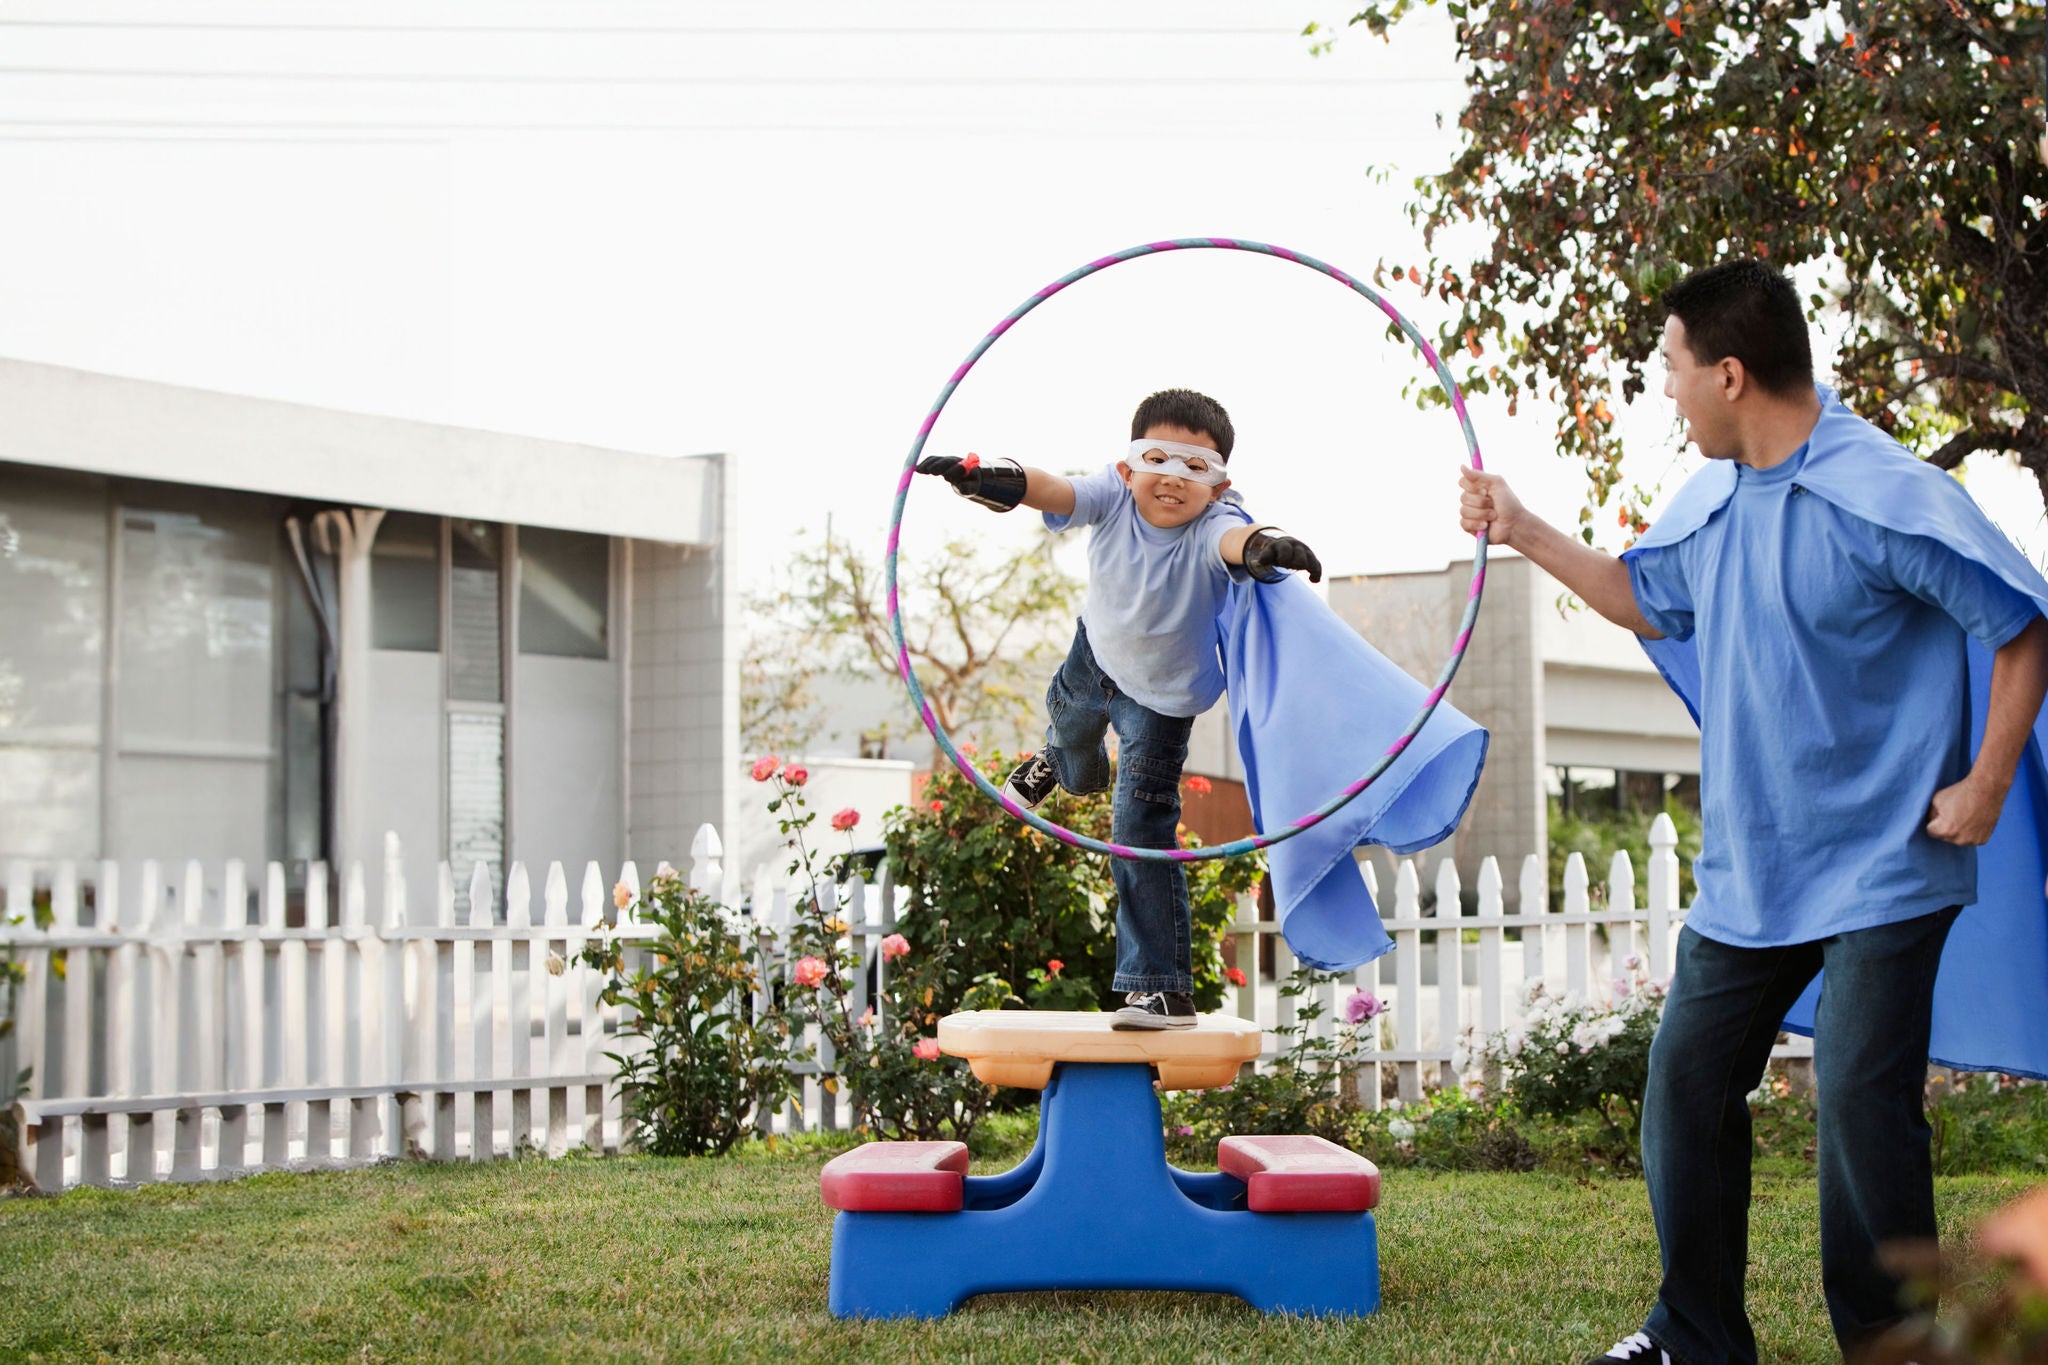 Boy in superhero costume jumping through hoop